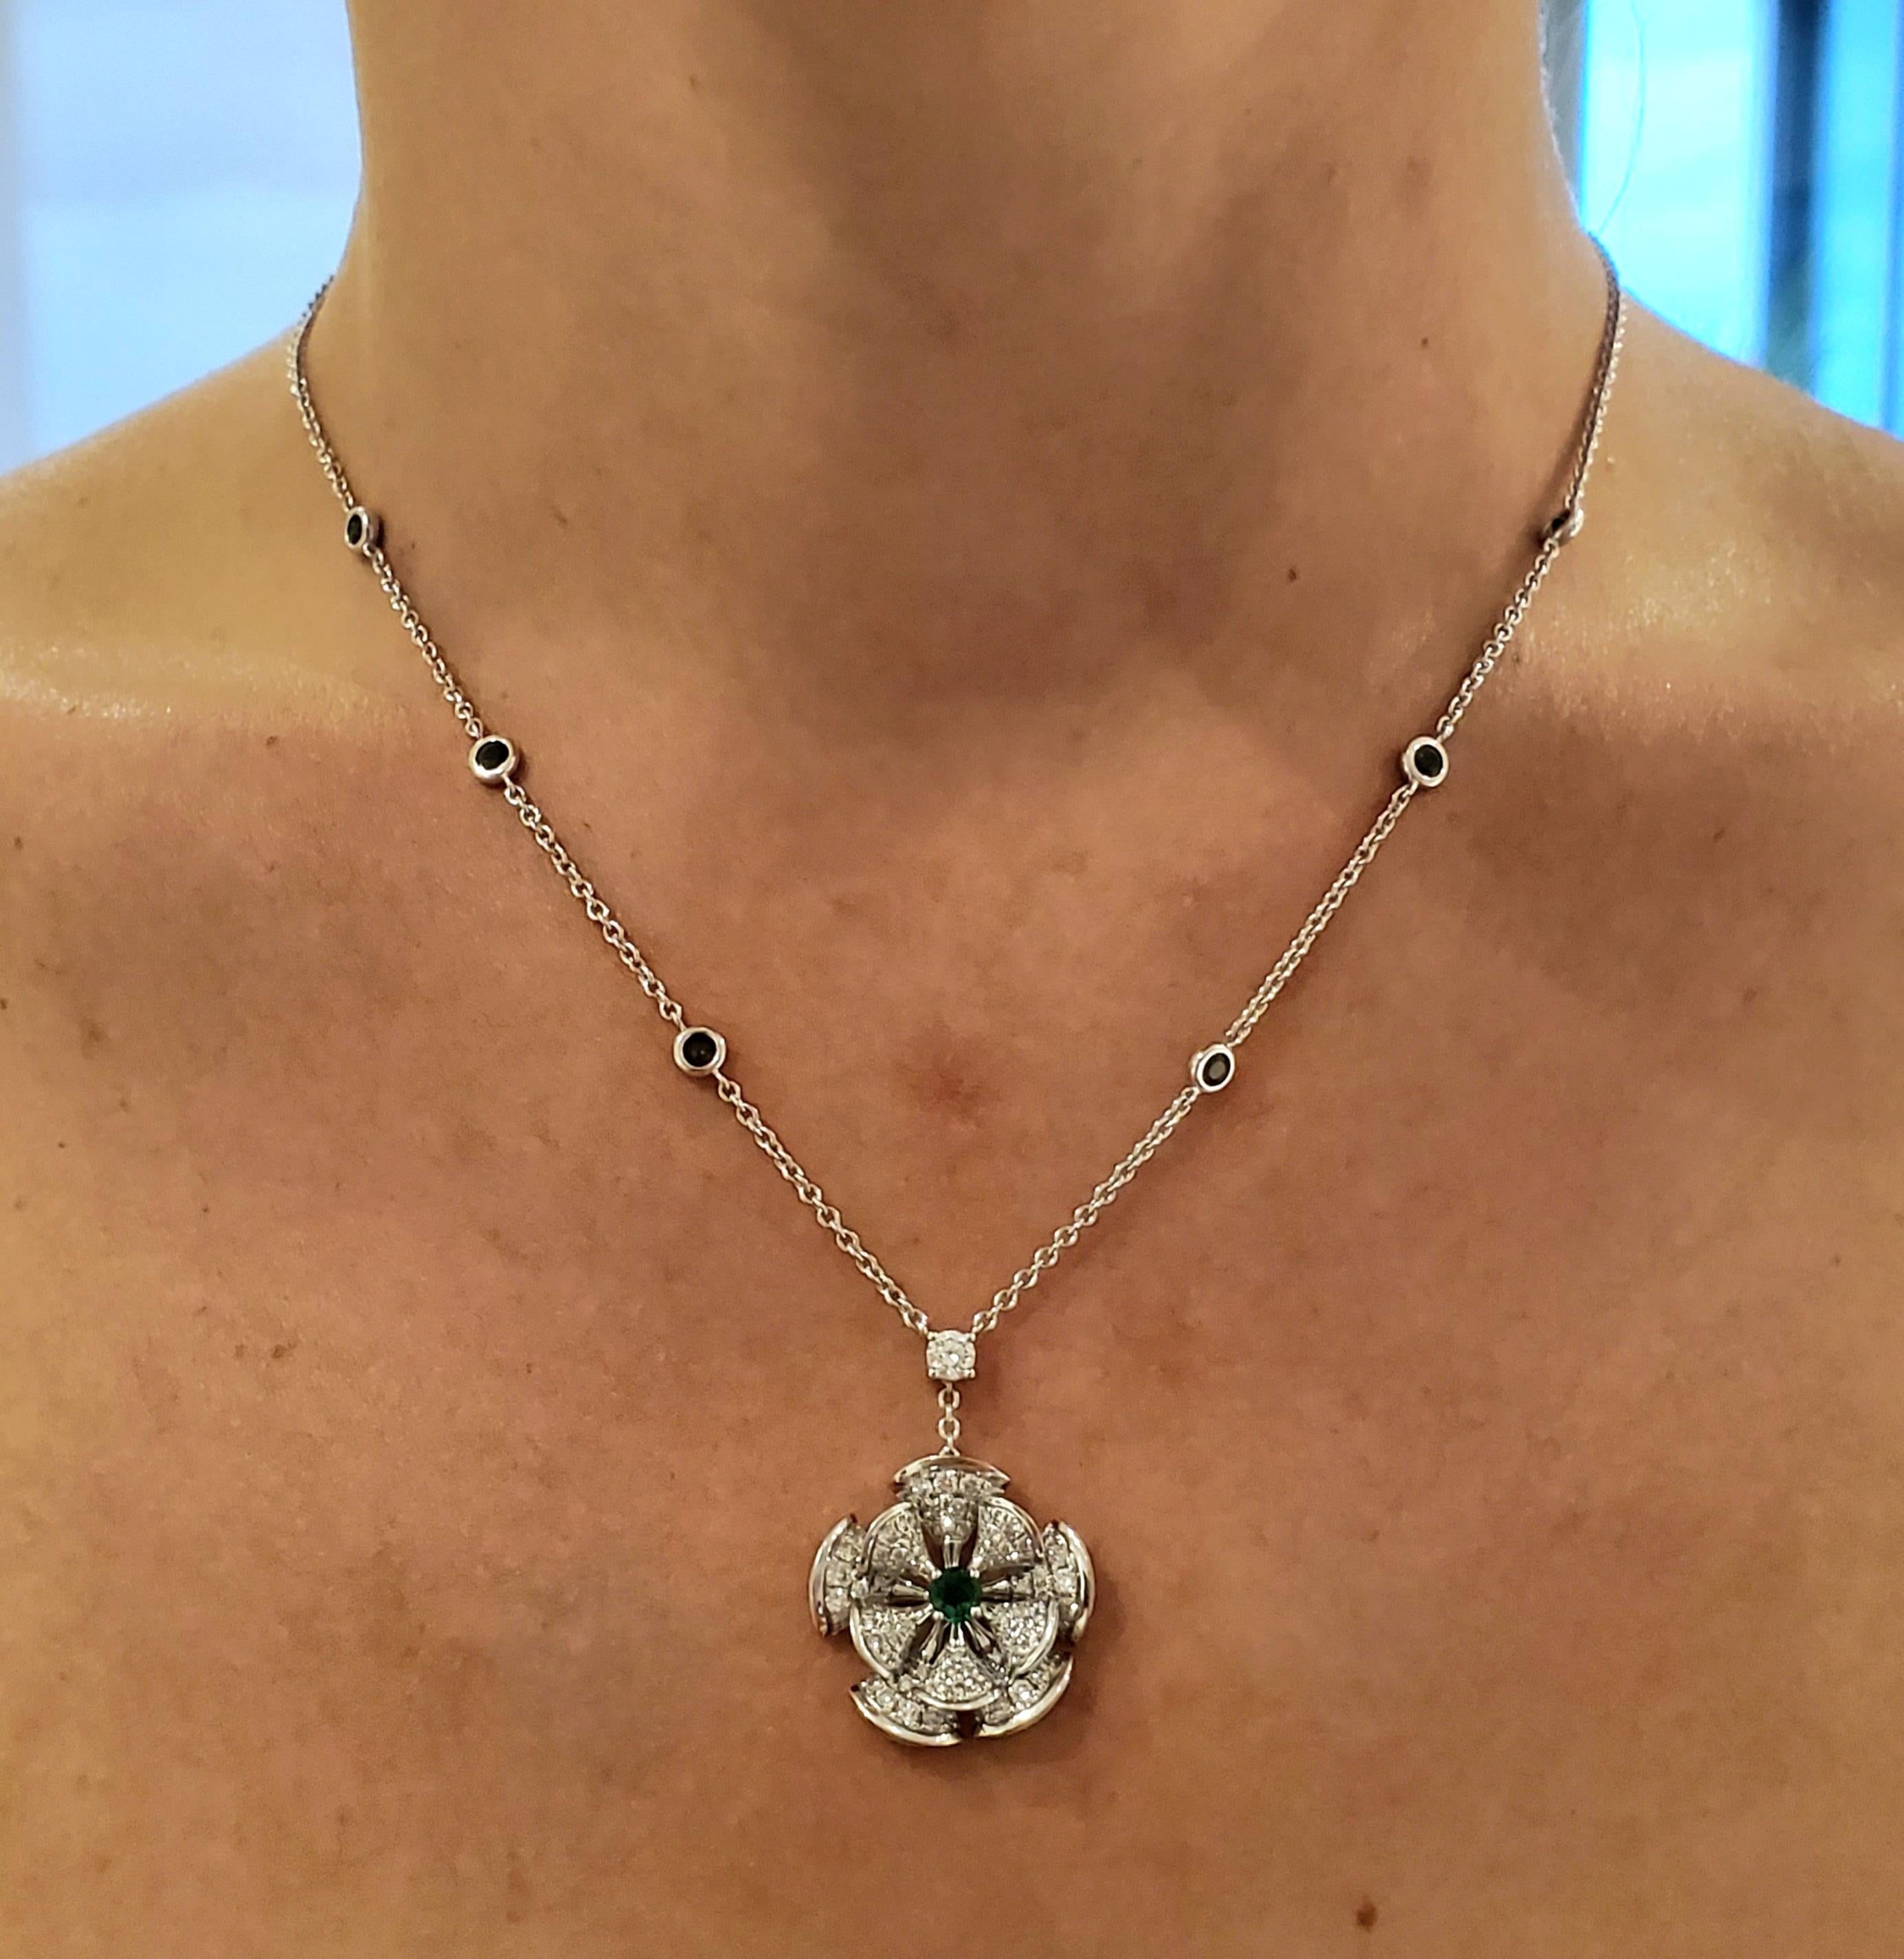 Women's Bvlgari Modern Divas Dream Drop Necklace in 18Kt White Gold, Diamonds & Emeralds